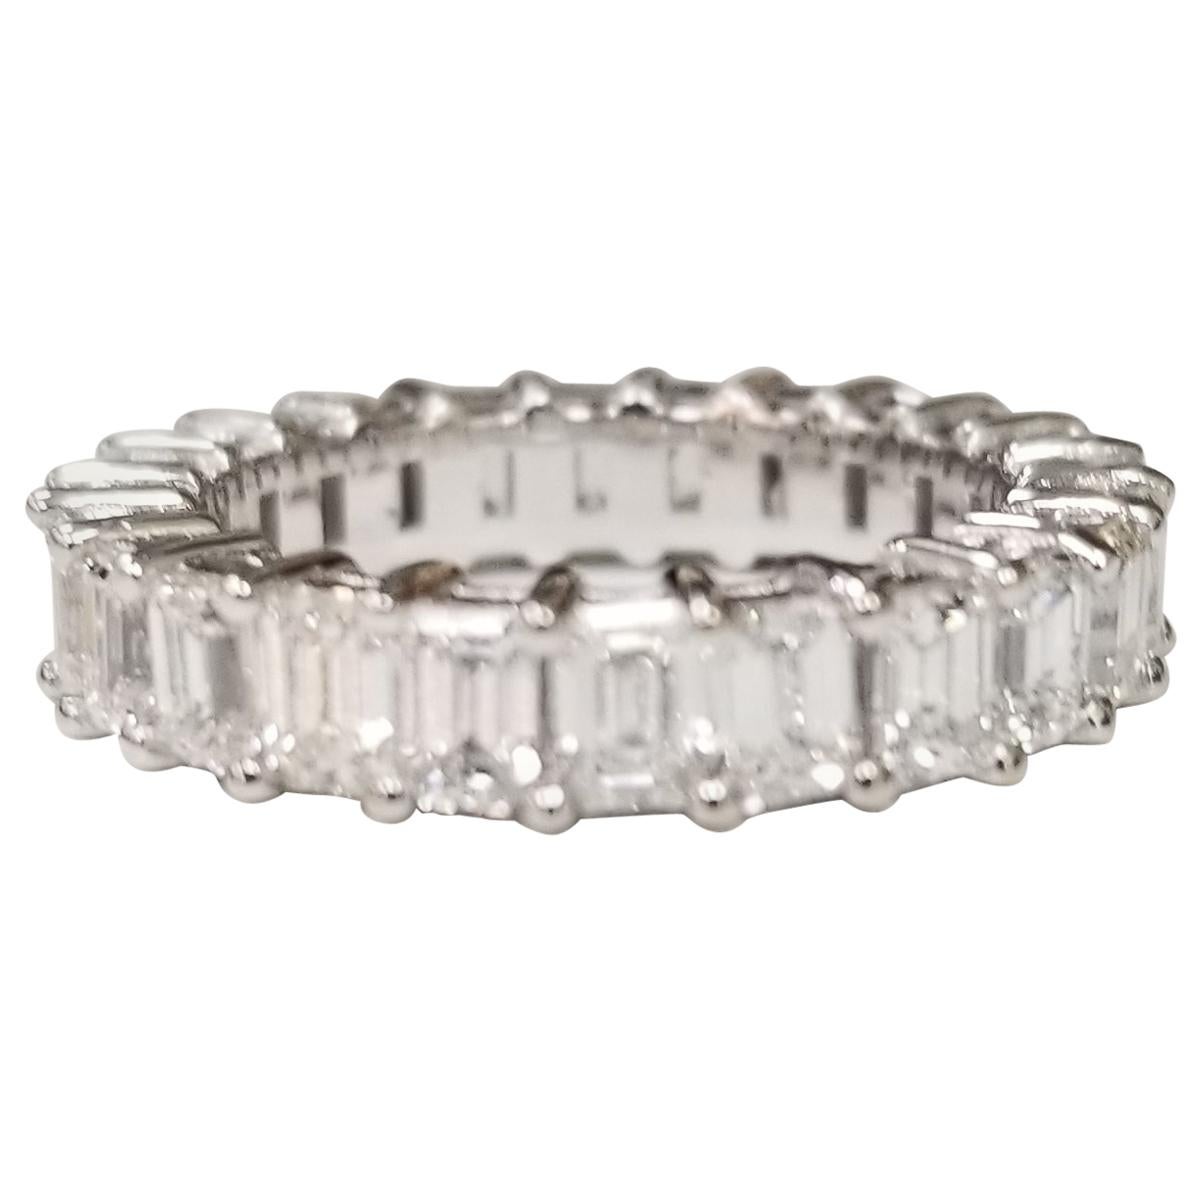 Emerald Cut Diamond Eternity Ring Set in 14 Karat White Gold Weighing 3.45 Carat